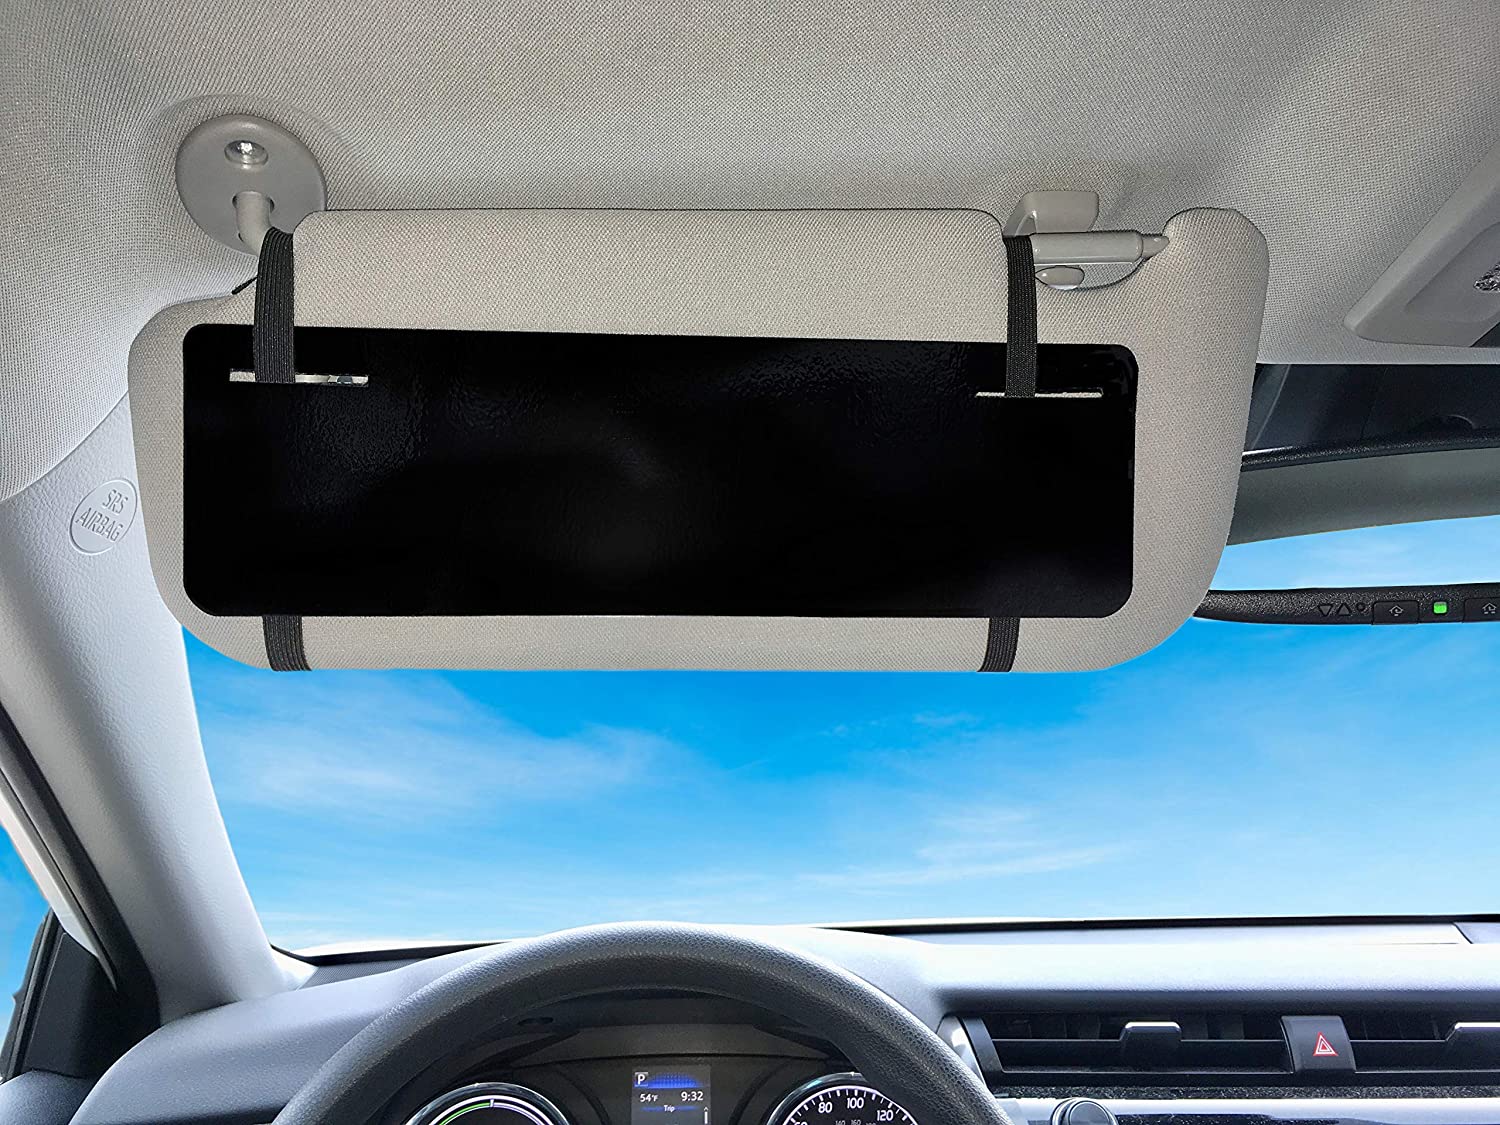 Car Visor Extender Anti-Glare Adjustable Car Sunshade Extender